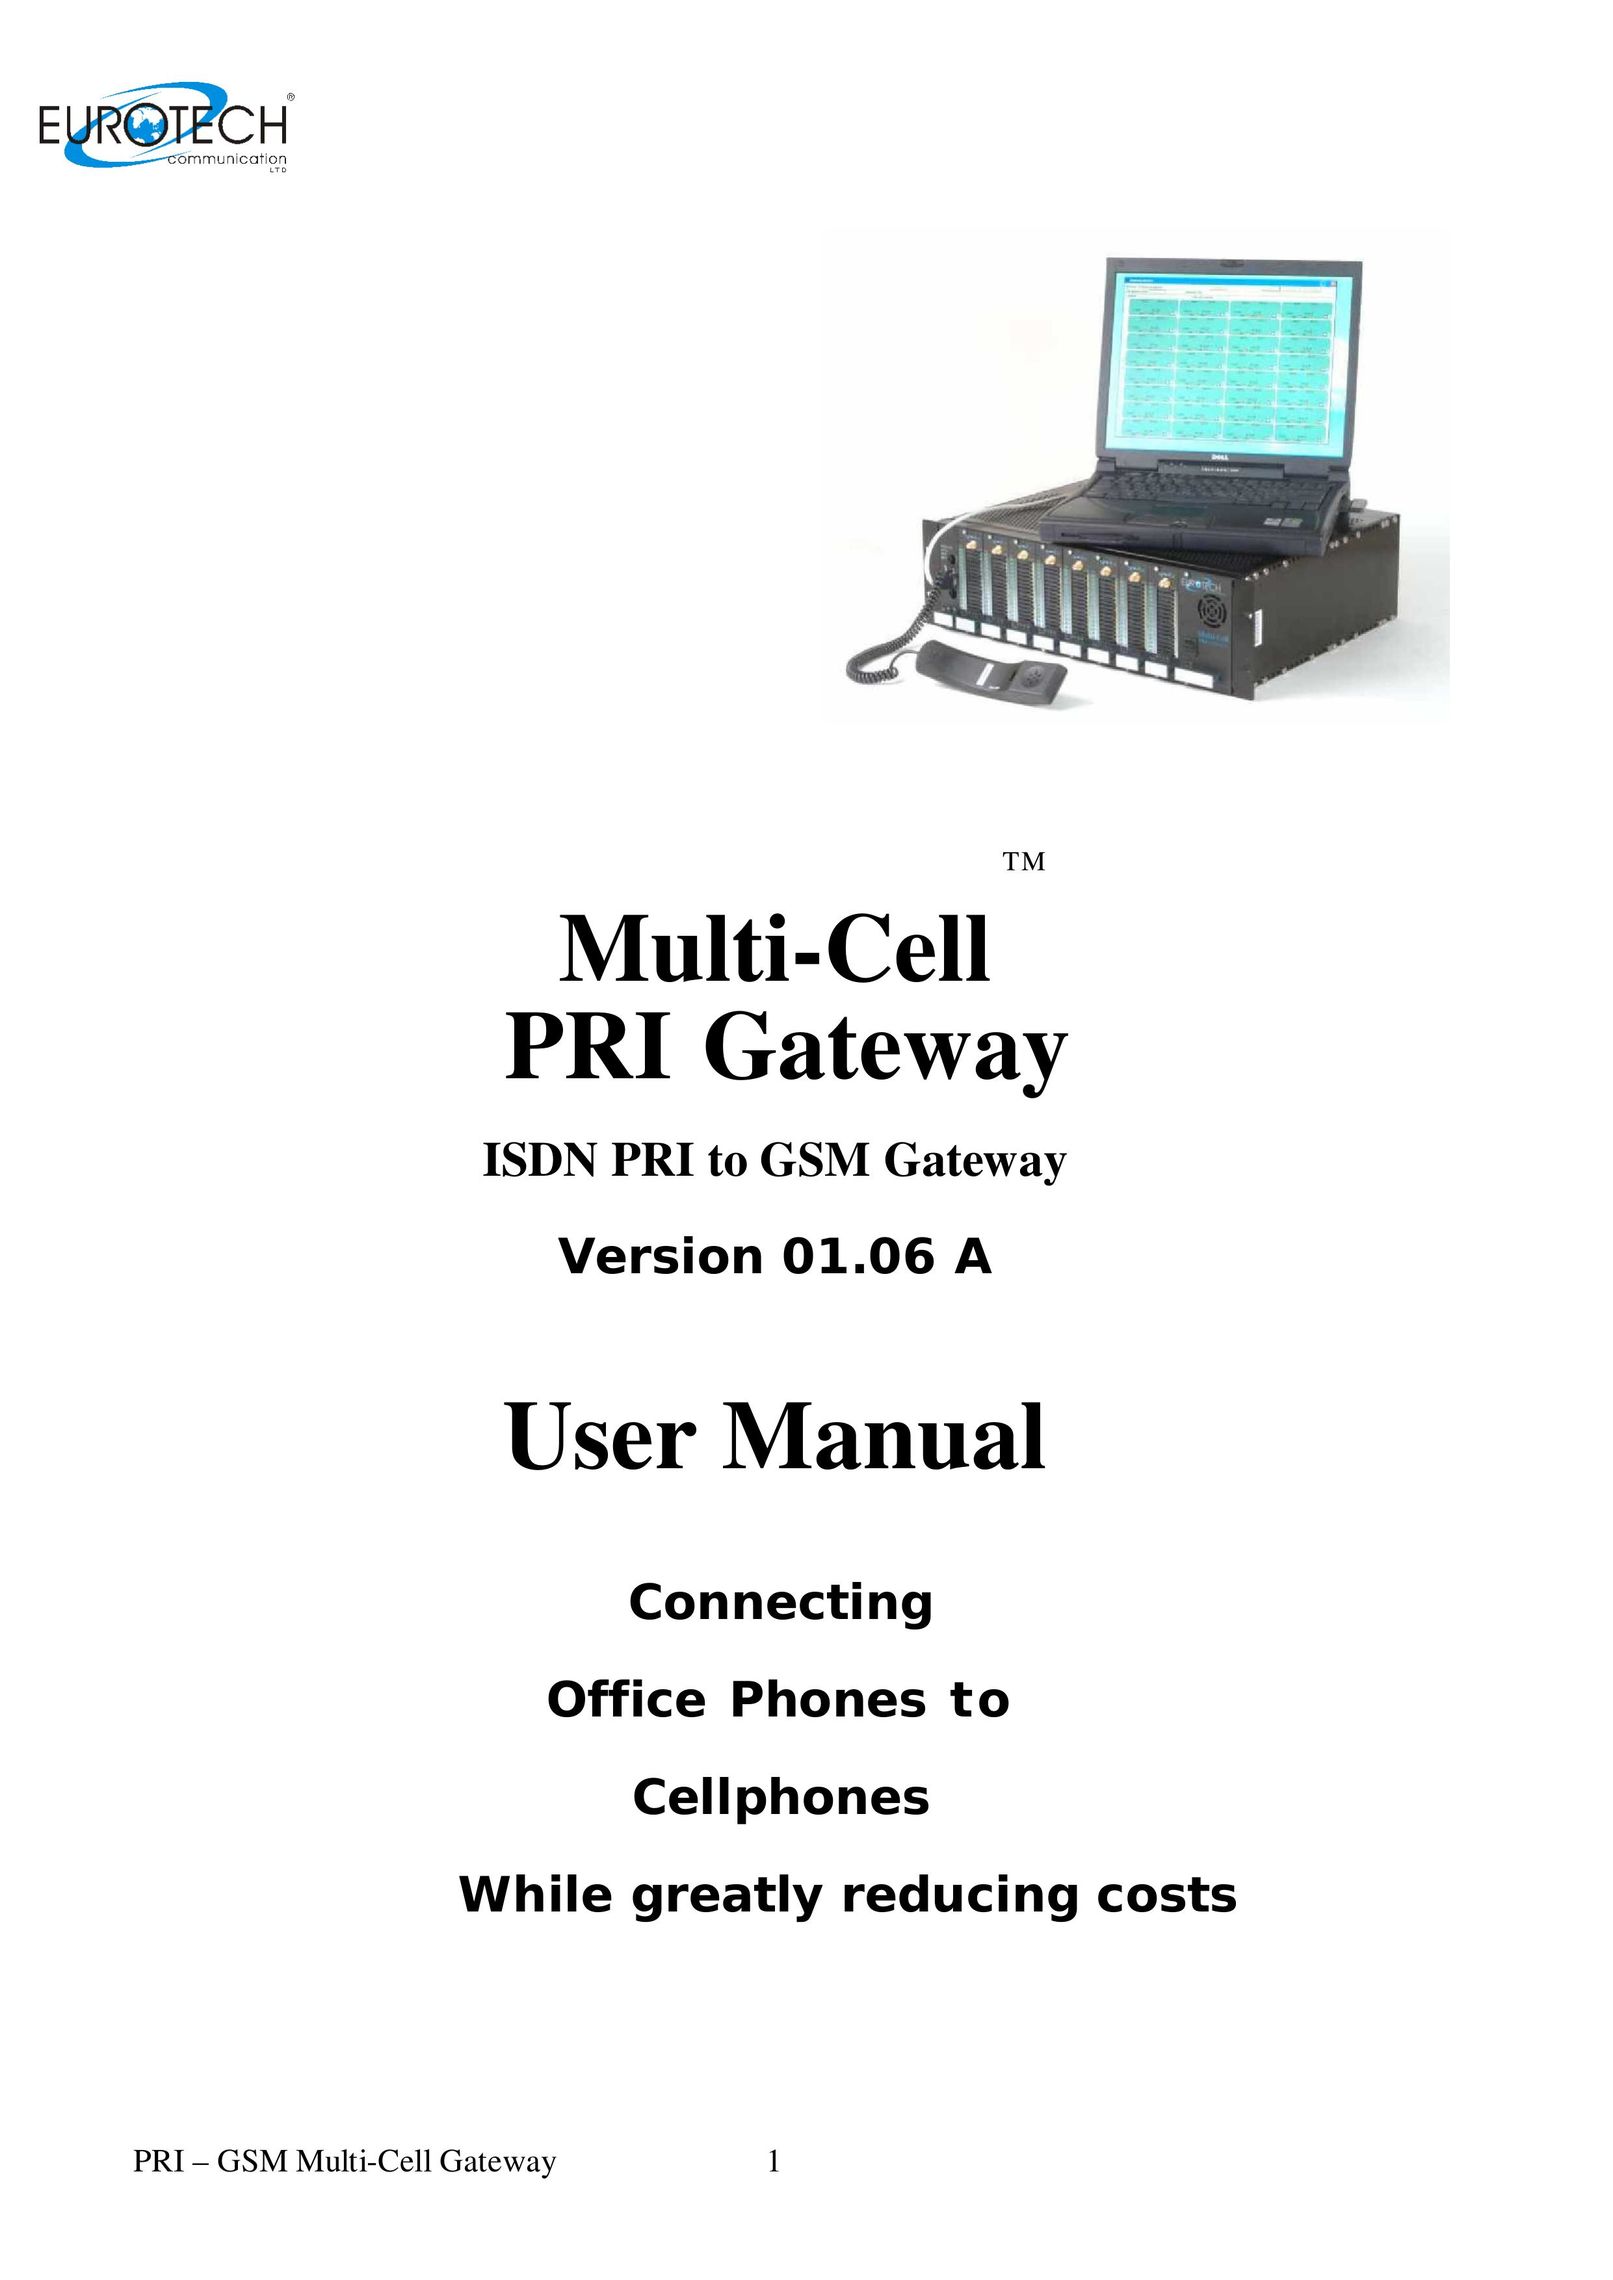 Eurotech Appliances Multi-Cell PRI Gateway Telephone User Manual